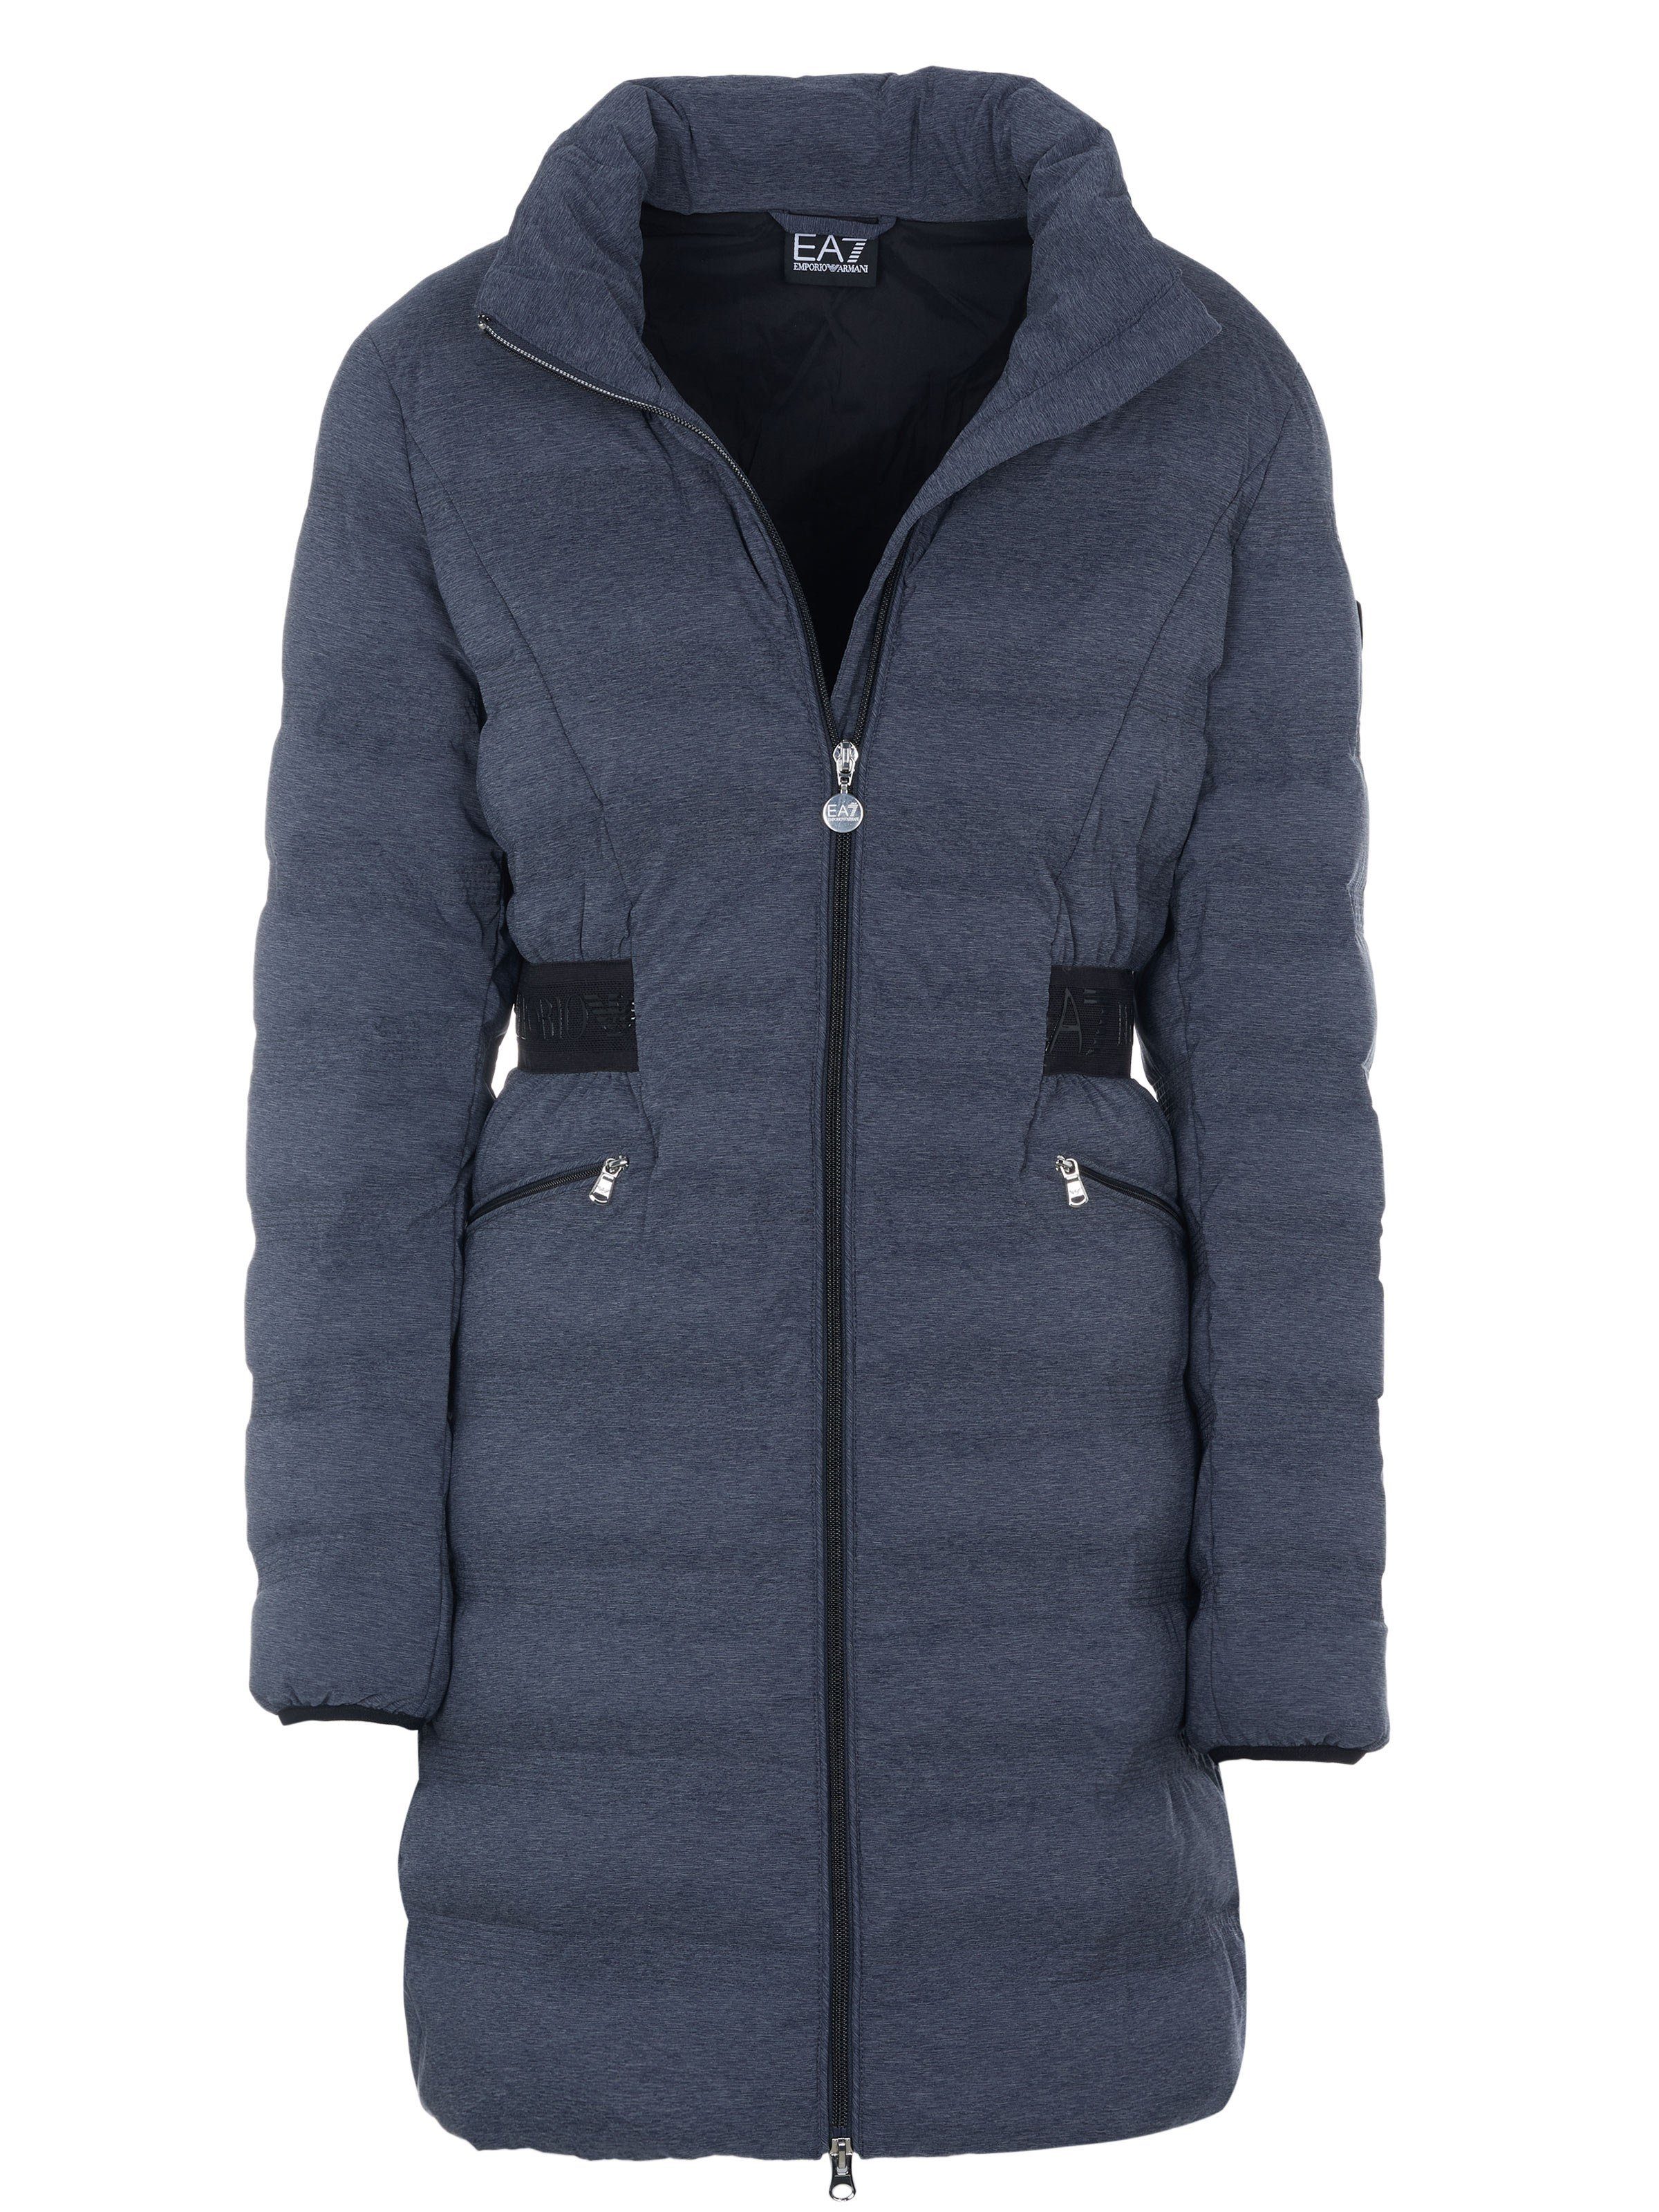 Armani Exchange Jacken für Damen online kaufen | OTTO